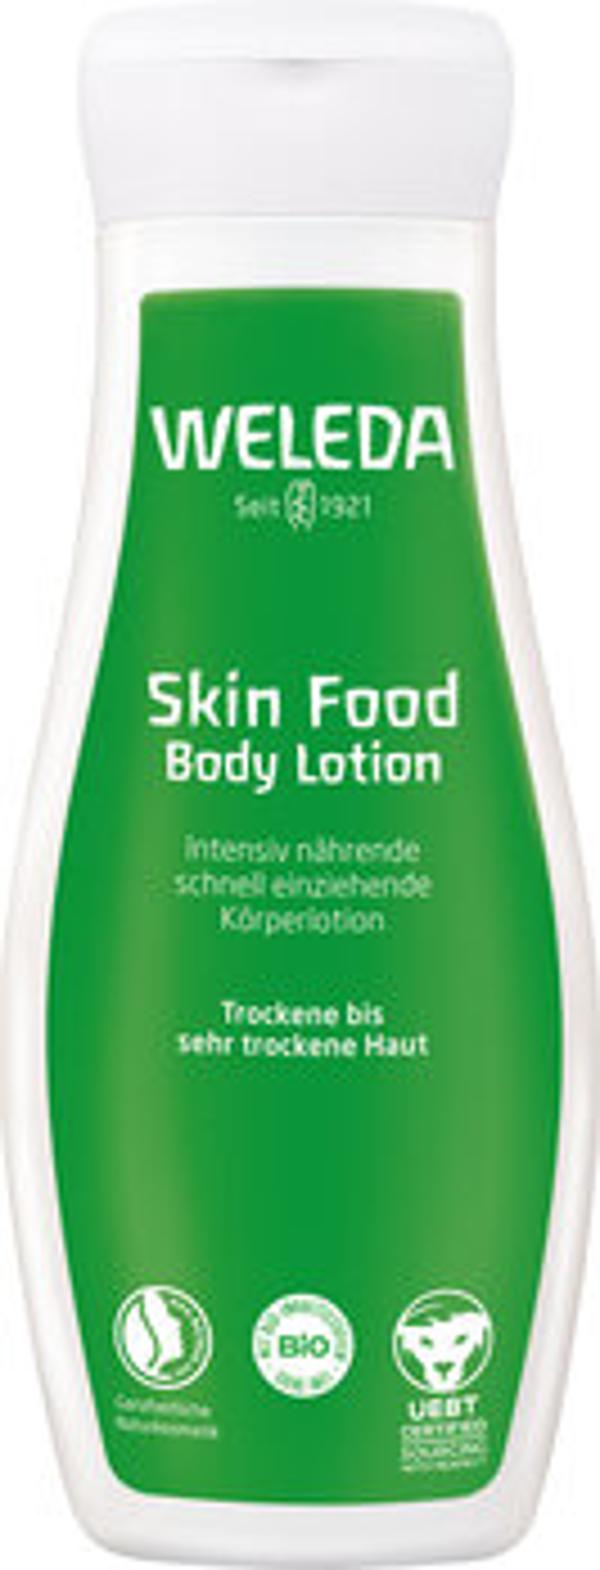 Produktfoto zu Skin Food Körperlotion, 200 ml - 25% reduziert, da MHD 06.2024